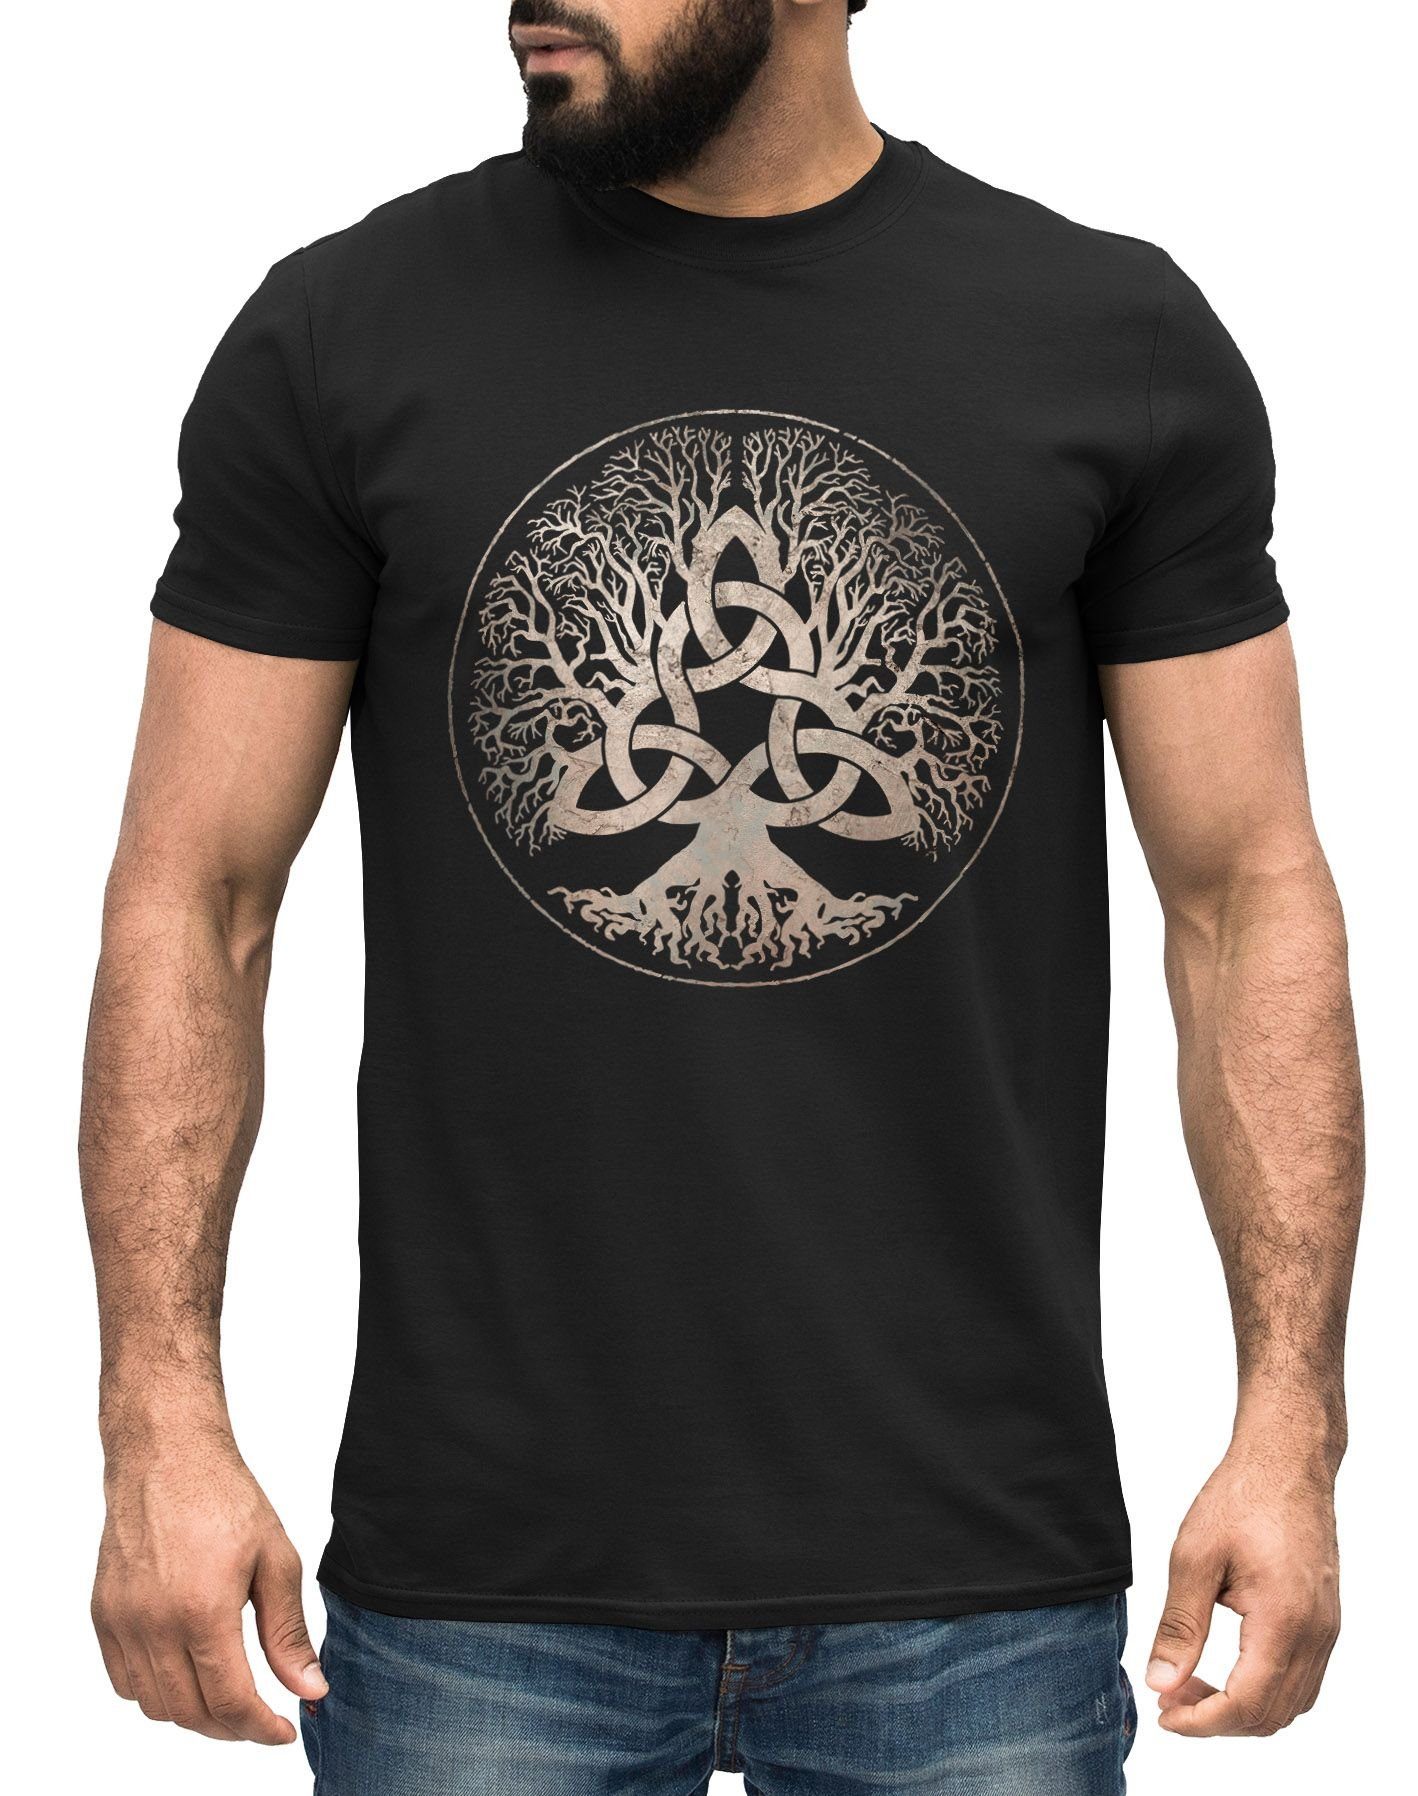 Götter Mythologie Neverless® Wikinger mit Neverless nordische Yggdrasil Print-Shirt Kelten Germanen Herren T-Shirt Weltenbaum Print Asgard